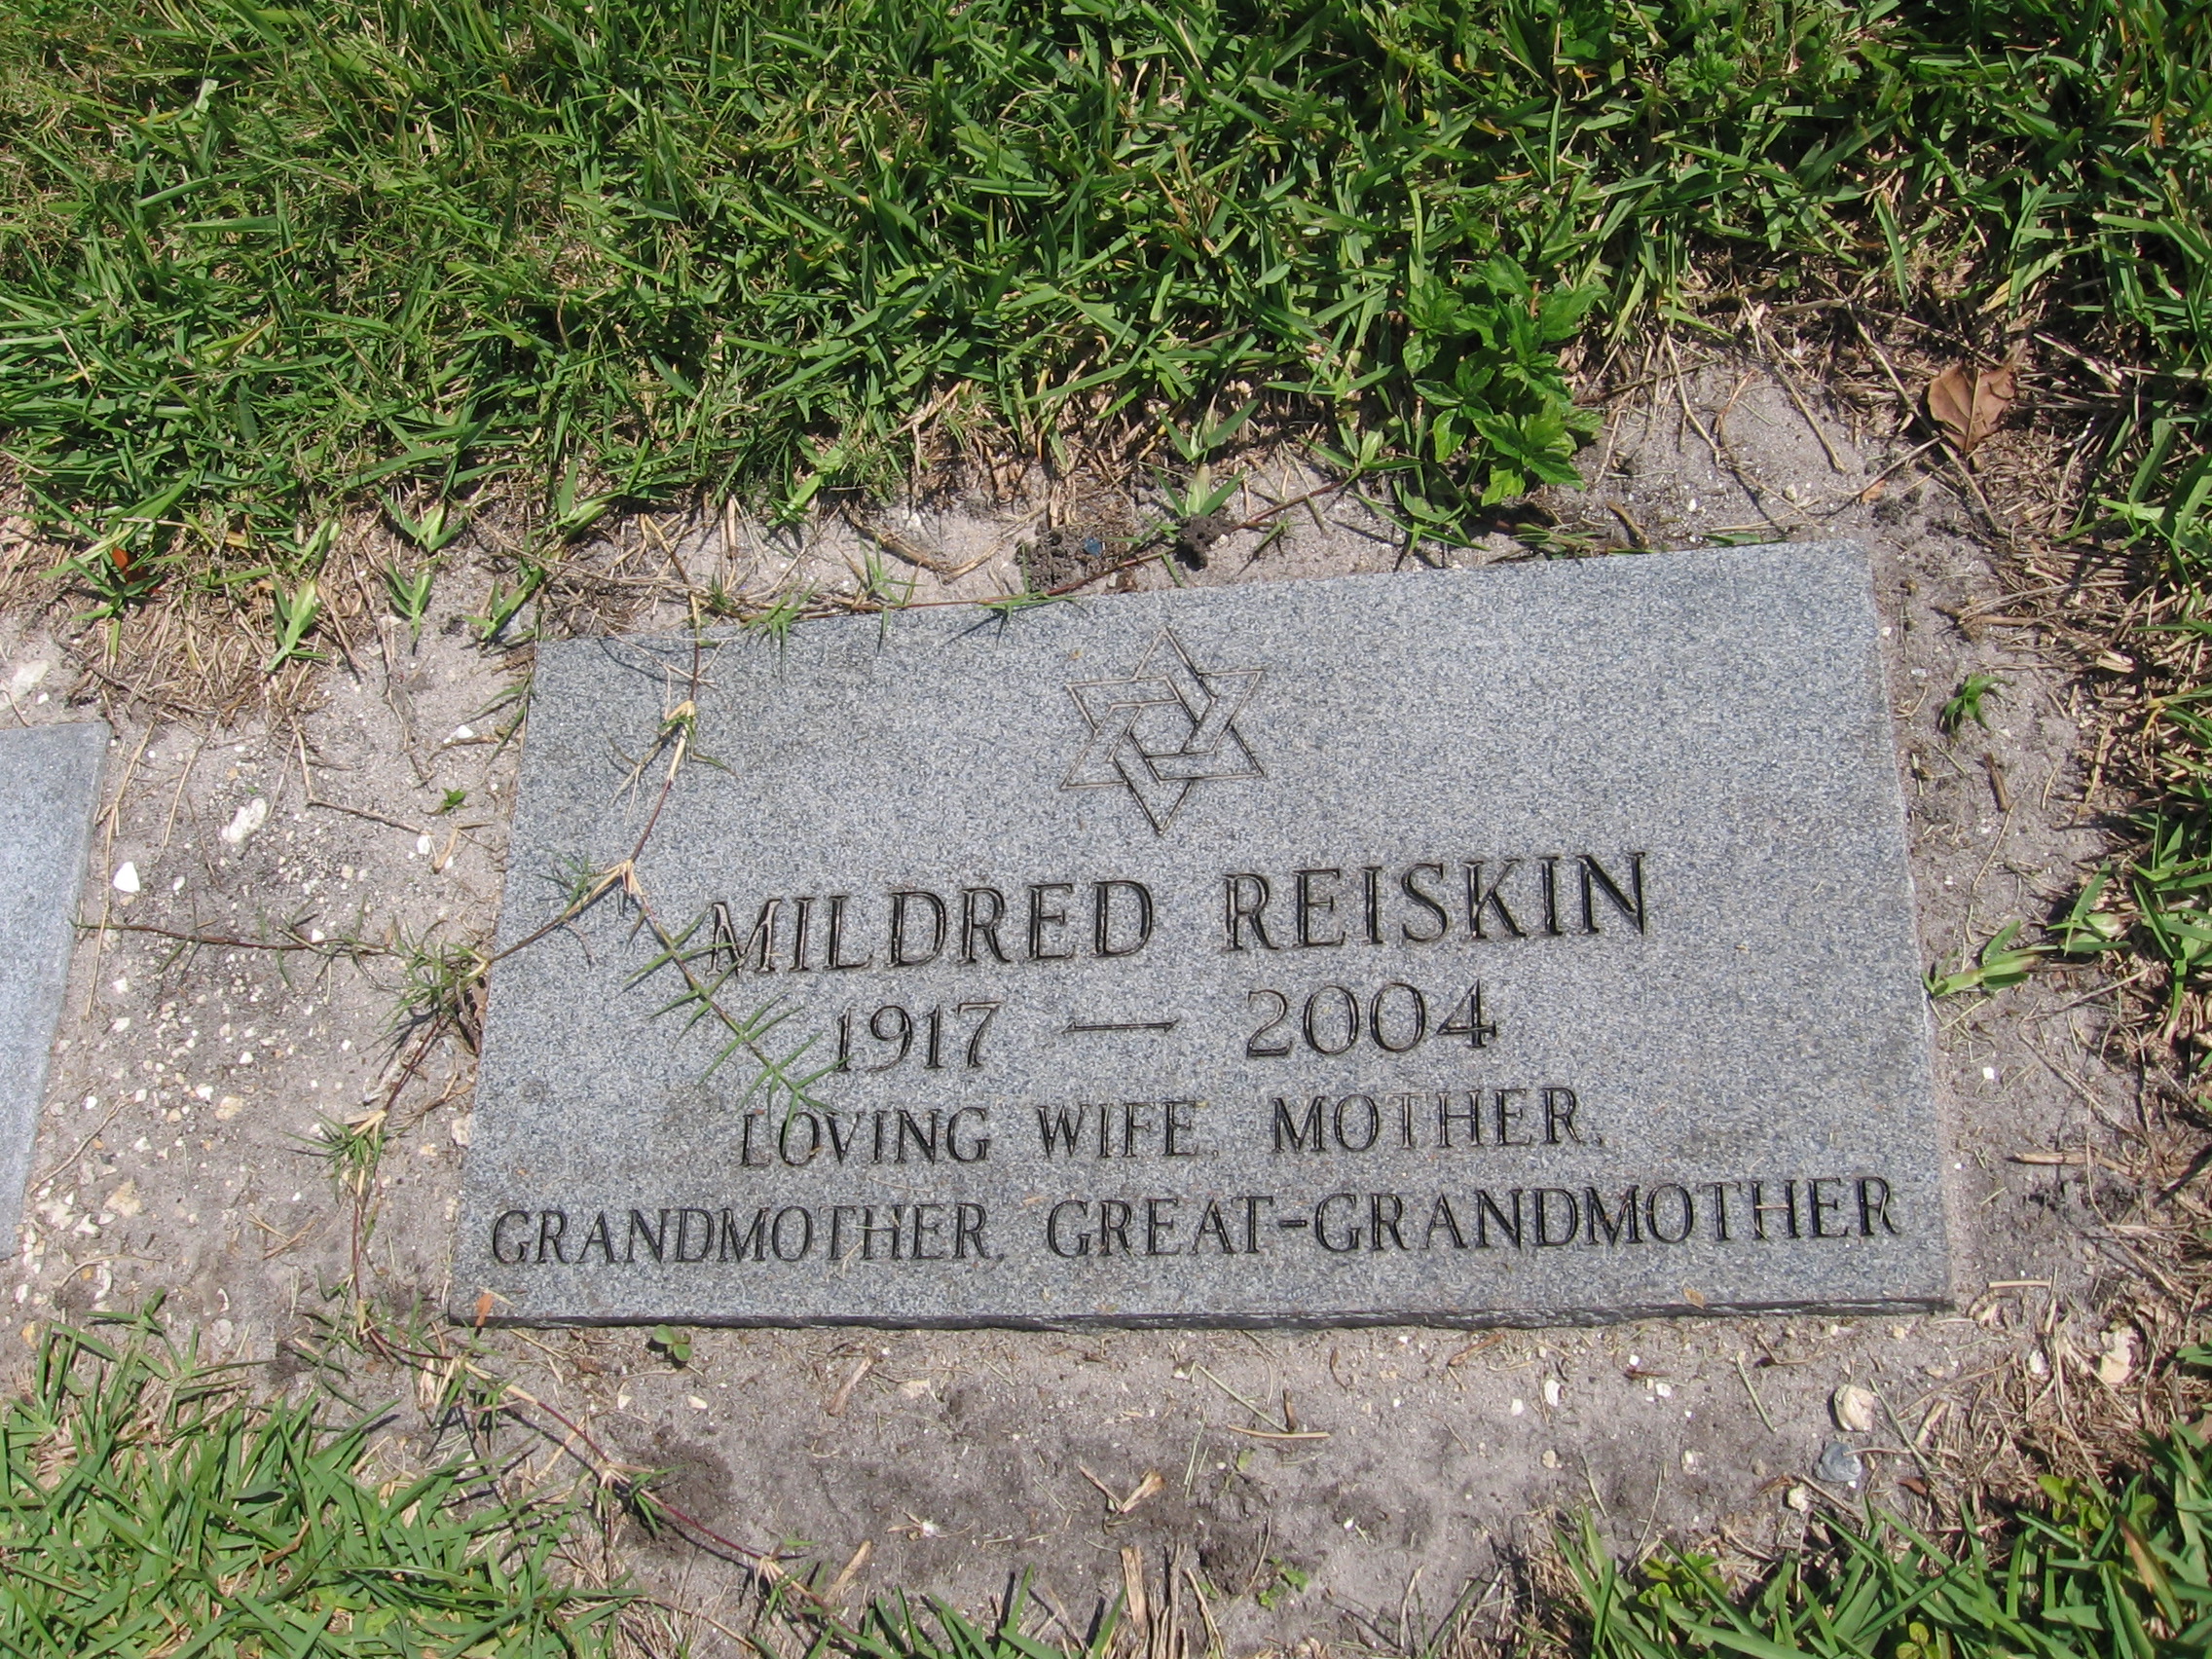 Mildred Reiskin